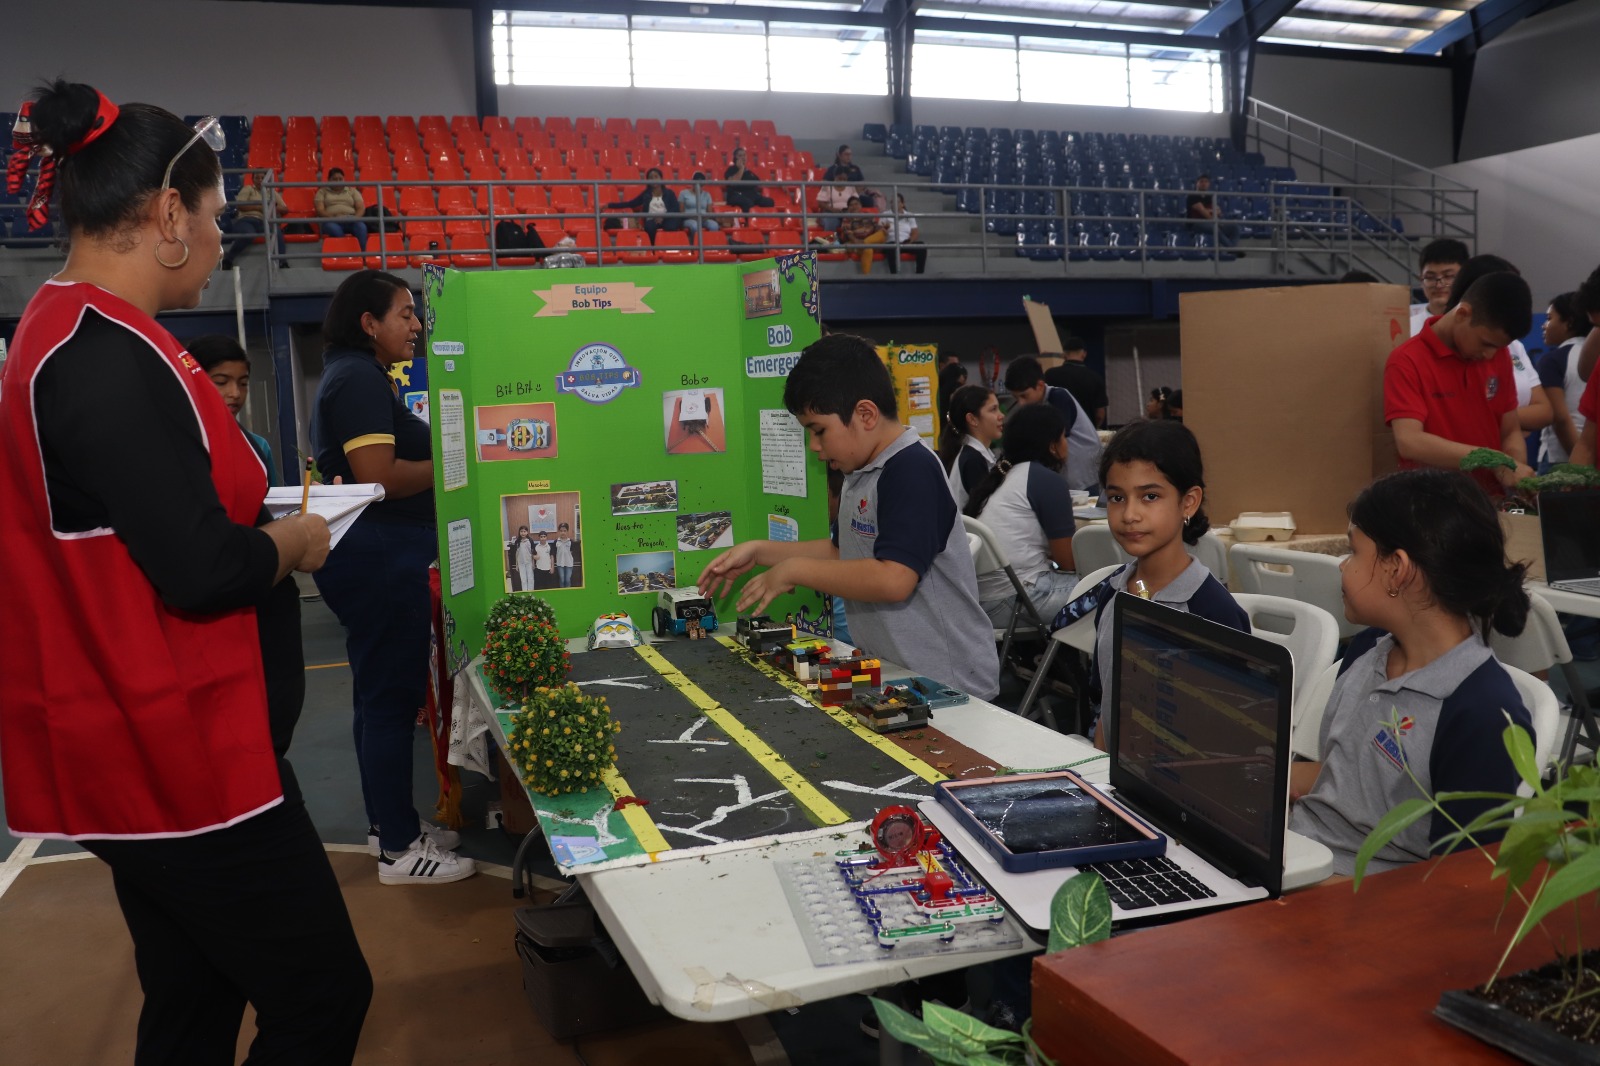 Estudiantes de Coclé y Veraguas presentan novedosos proyectos de robótica